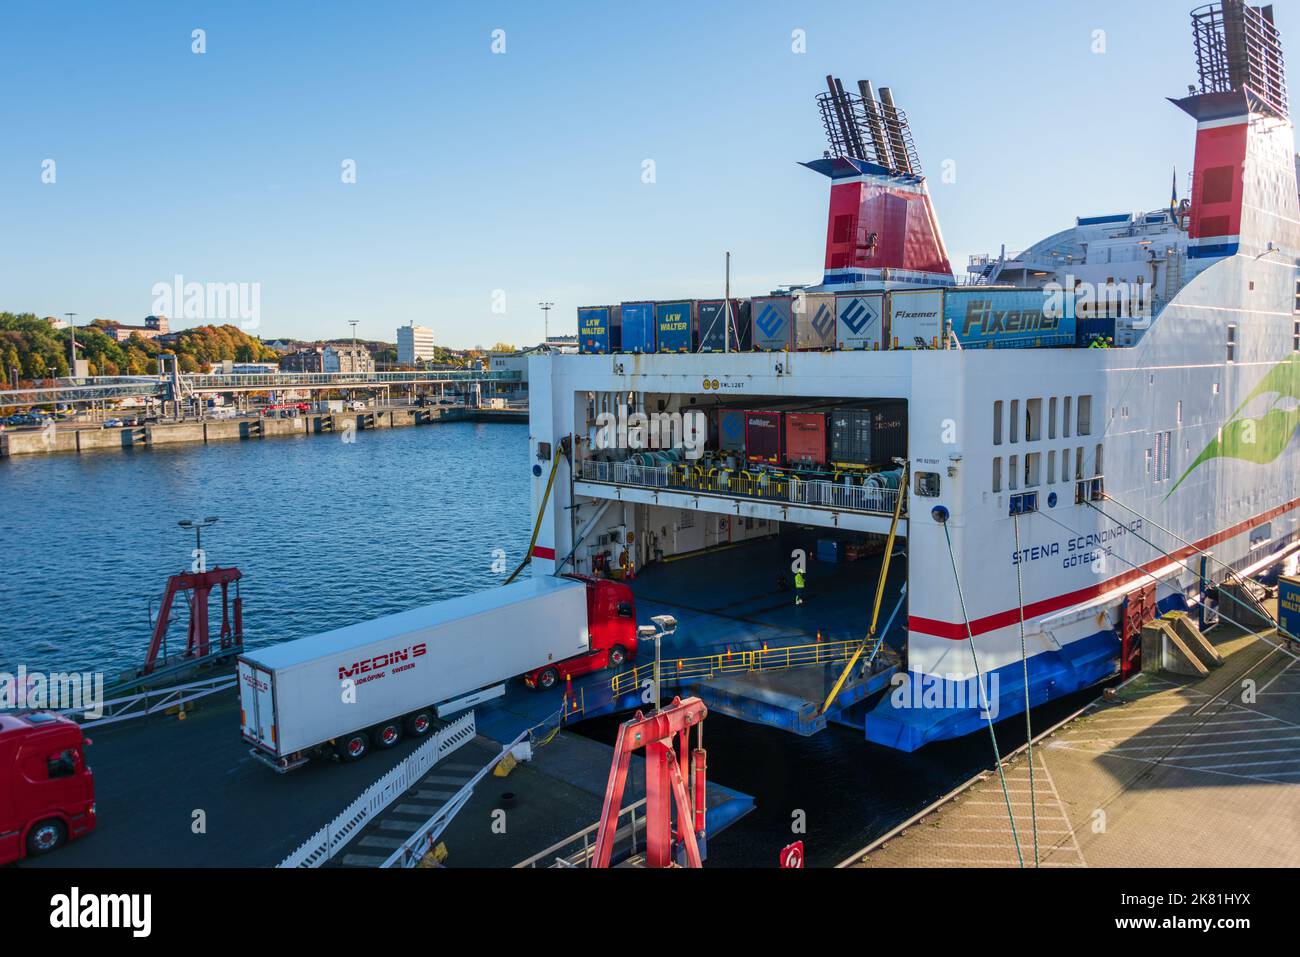 Hafen von Kiel am Stena Terminal, die Schwedenfähre wirs beladen Foto Stock